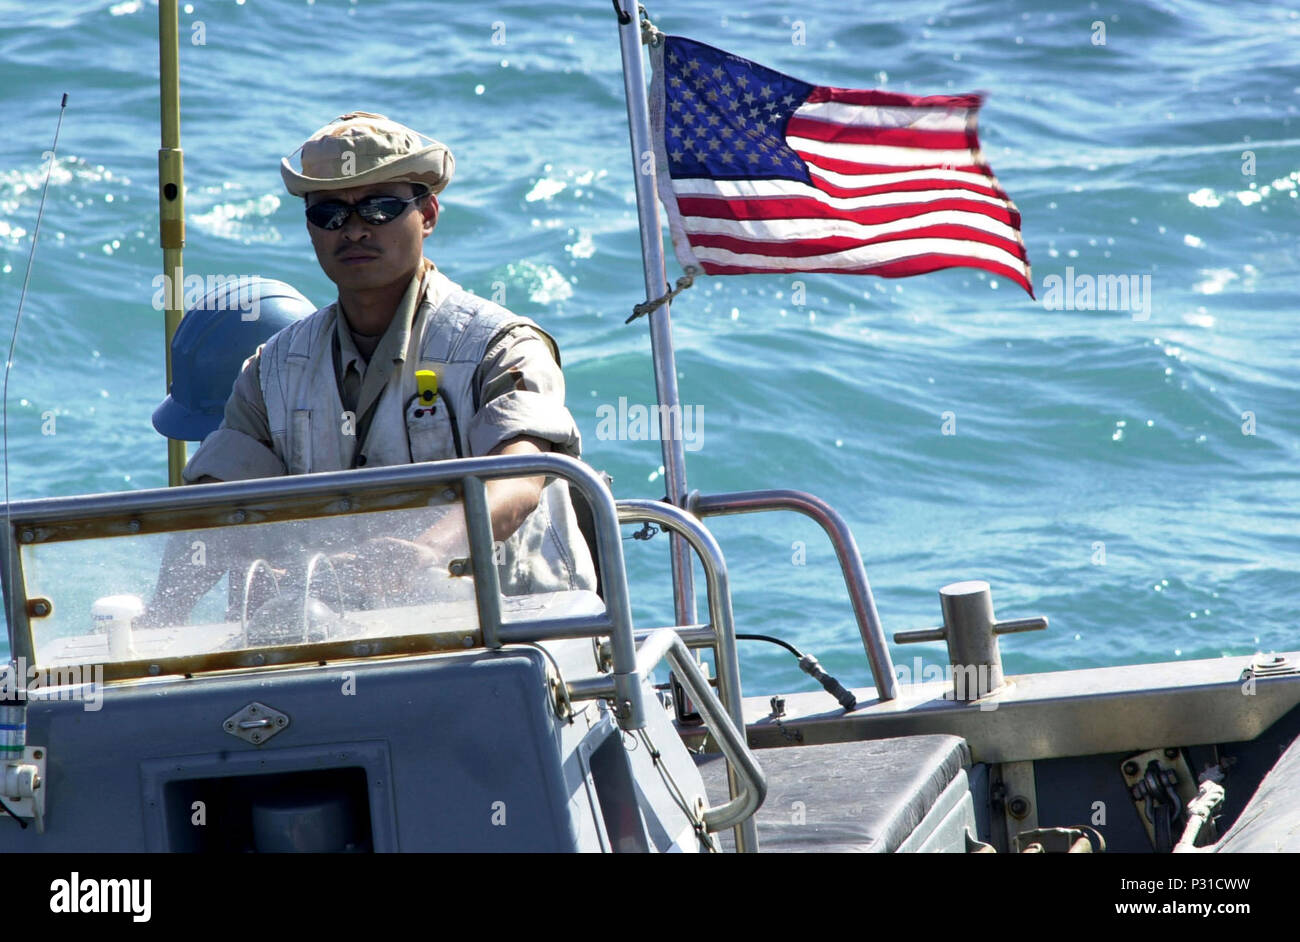 La Operación Libertad Duradera (Ene. 15, 2002) -- Las maniobras Coxswain Smallboat un bote inflable de casco rígido (RHIB) al piloto de la escalera para recoger el buque embarque búsqueda e incautación (VBSS) equipo de a bordo del USS Lake Champlain (CG 57). Las operaciones de interceptación marítima (MIO) están siendo llevadas a cabo por la Foto de stock